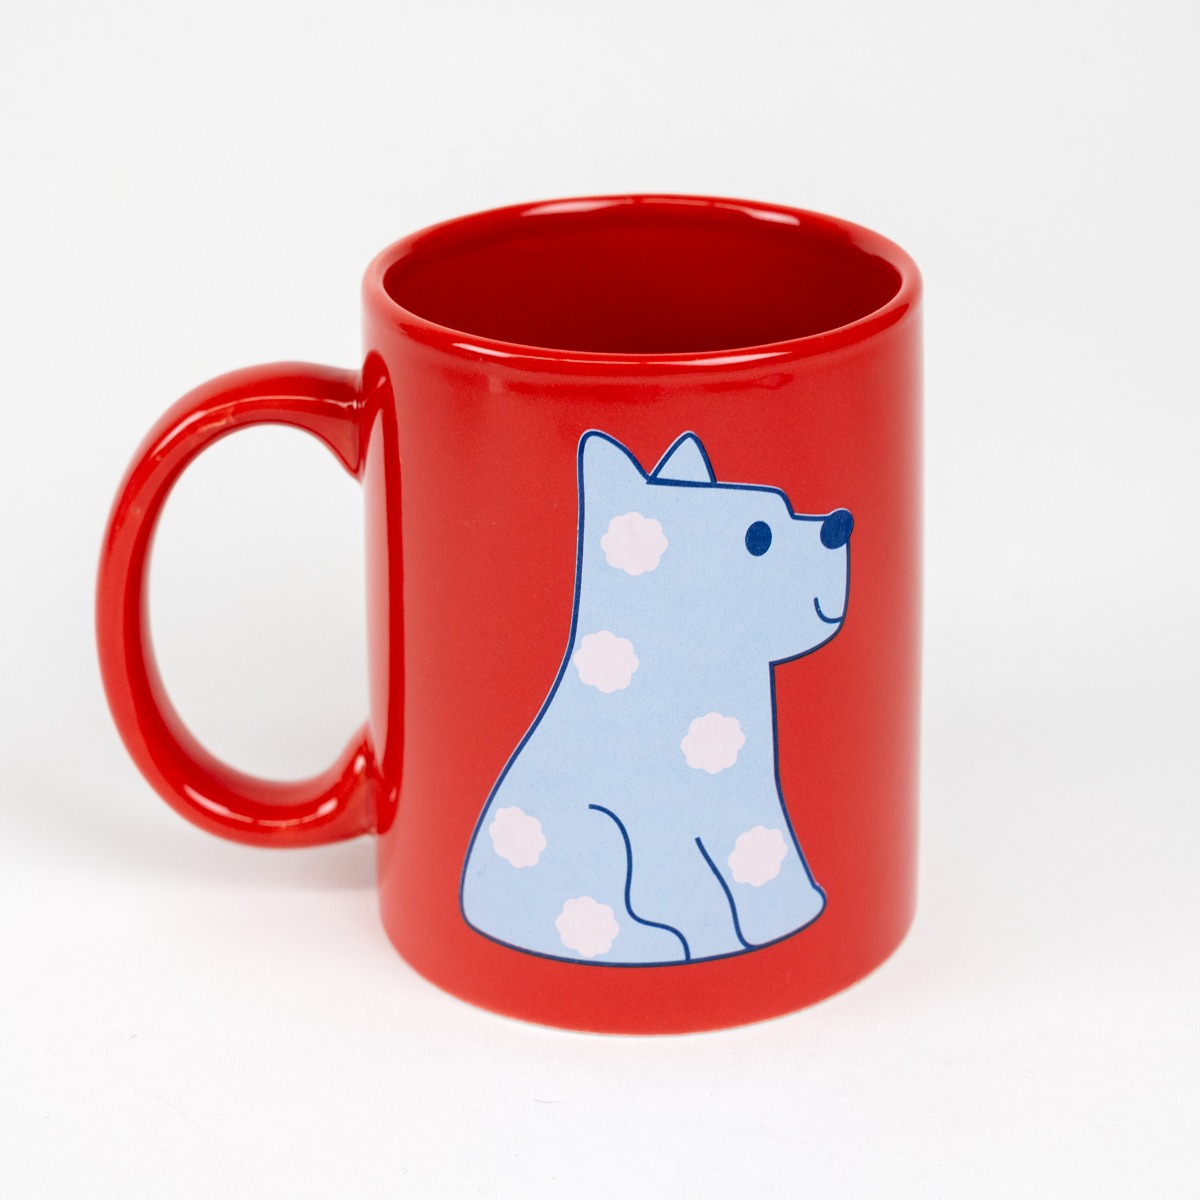 Museum + Puppy red mug